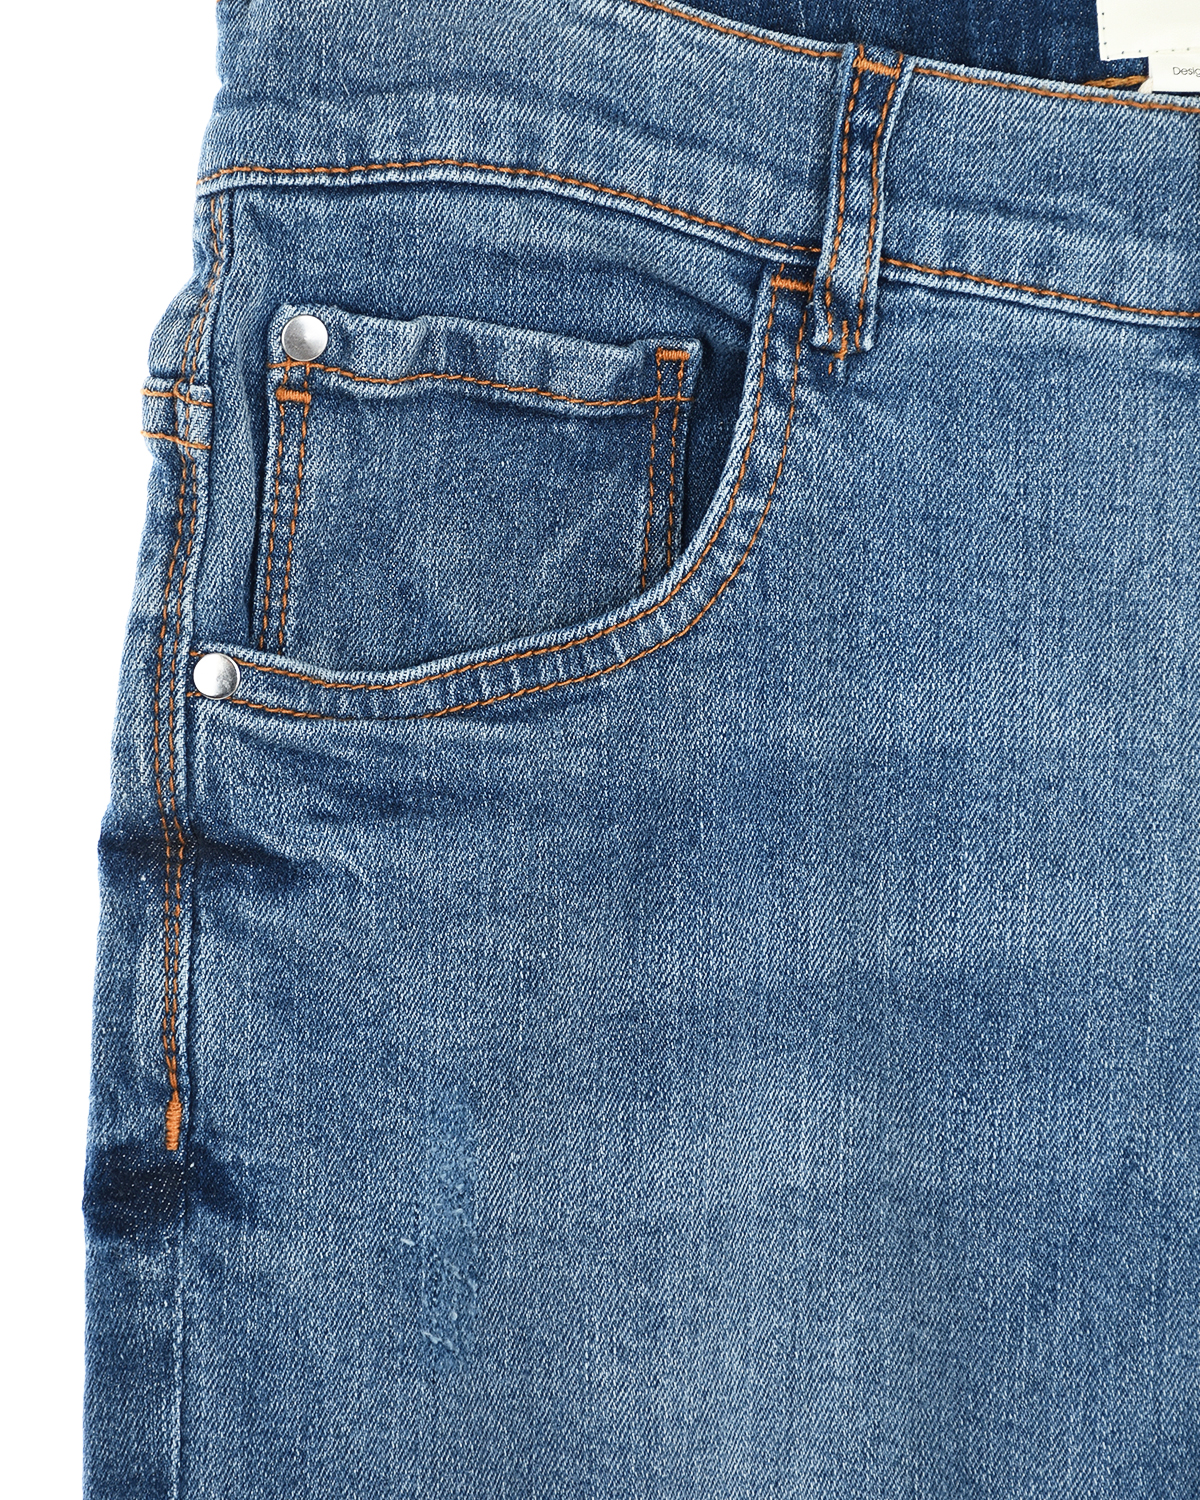 Джинсы с разрезами Its in my jeans детские, размер 176, цвет голубой - фото 3